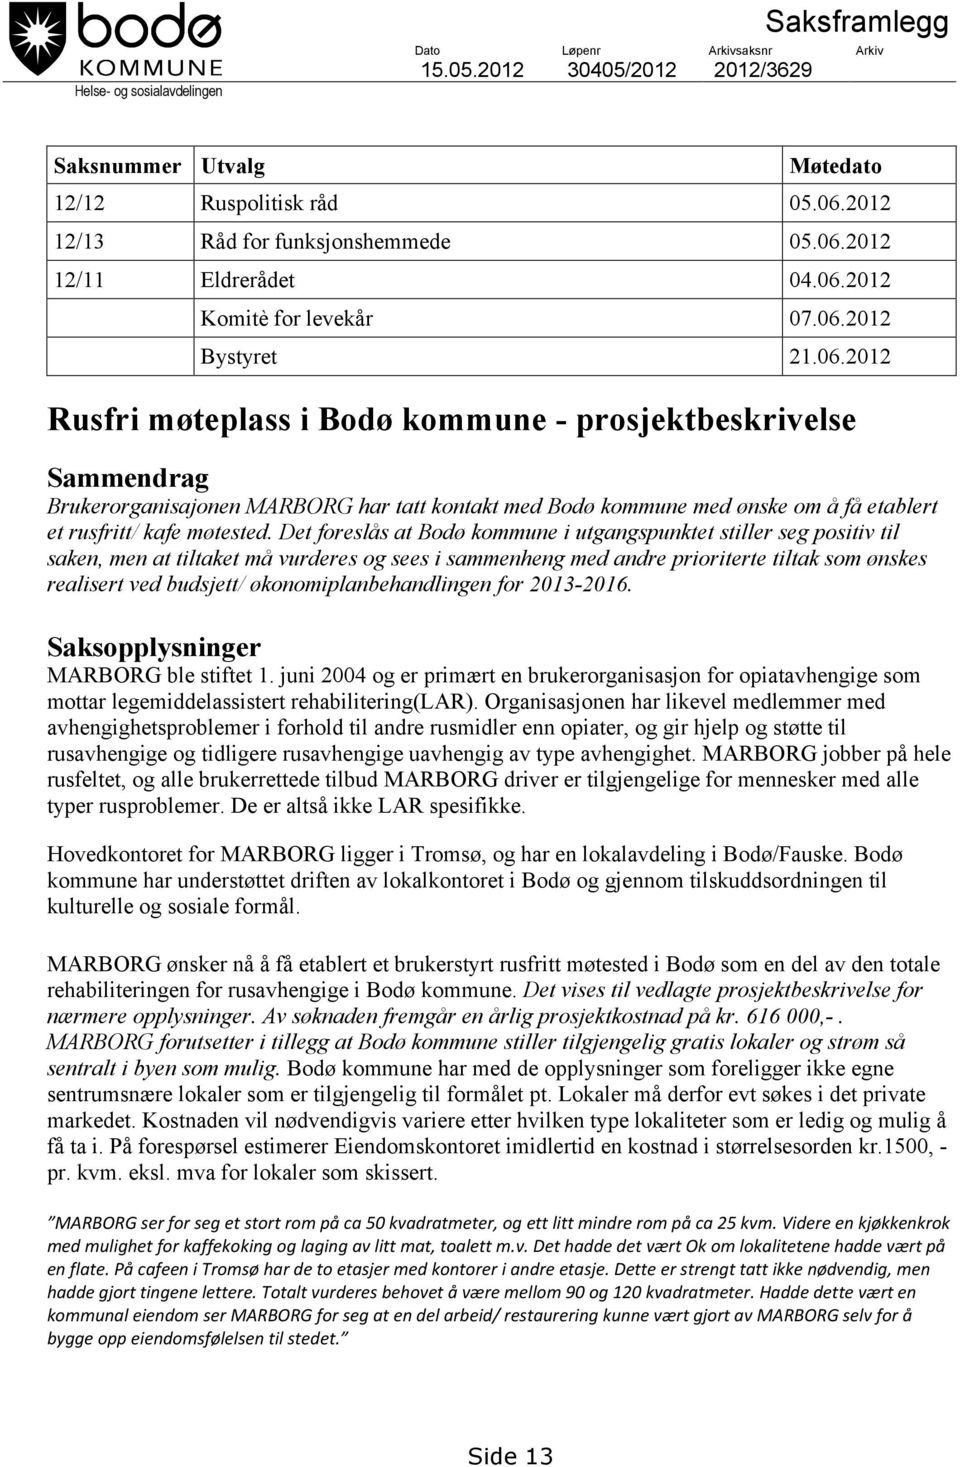 Det foreslås at Bodø kommune i utgangspunktet stiller seg positiv til saken, men at tiltaket må vurderes og sees i sammenheng med andre prioriterte tiltak som ønskes realisert ved budsjett/